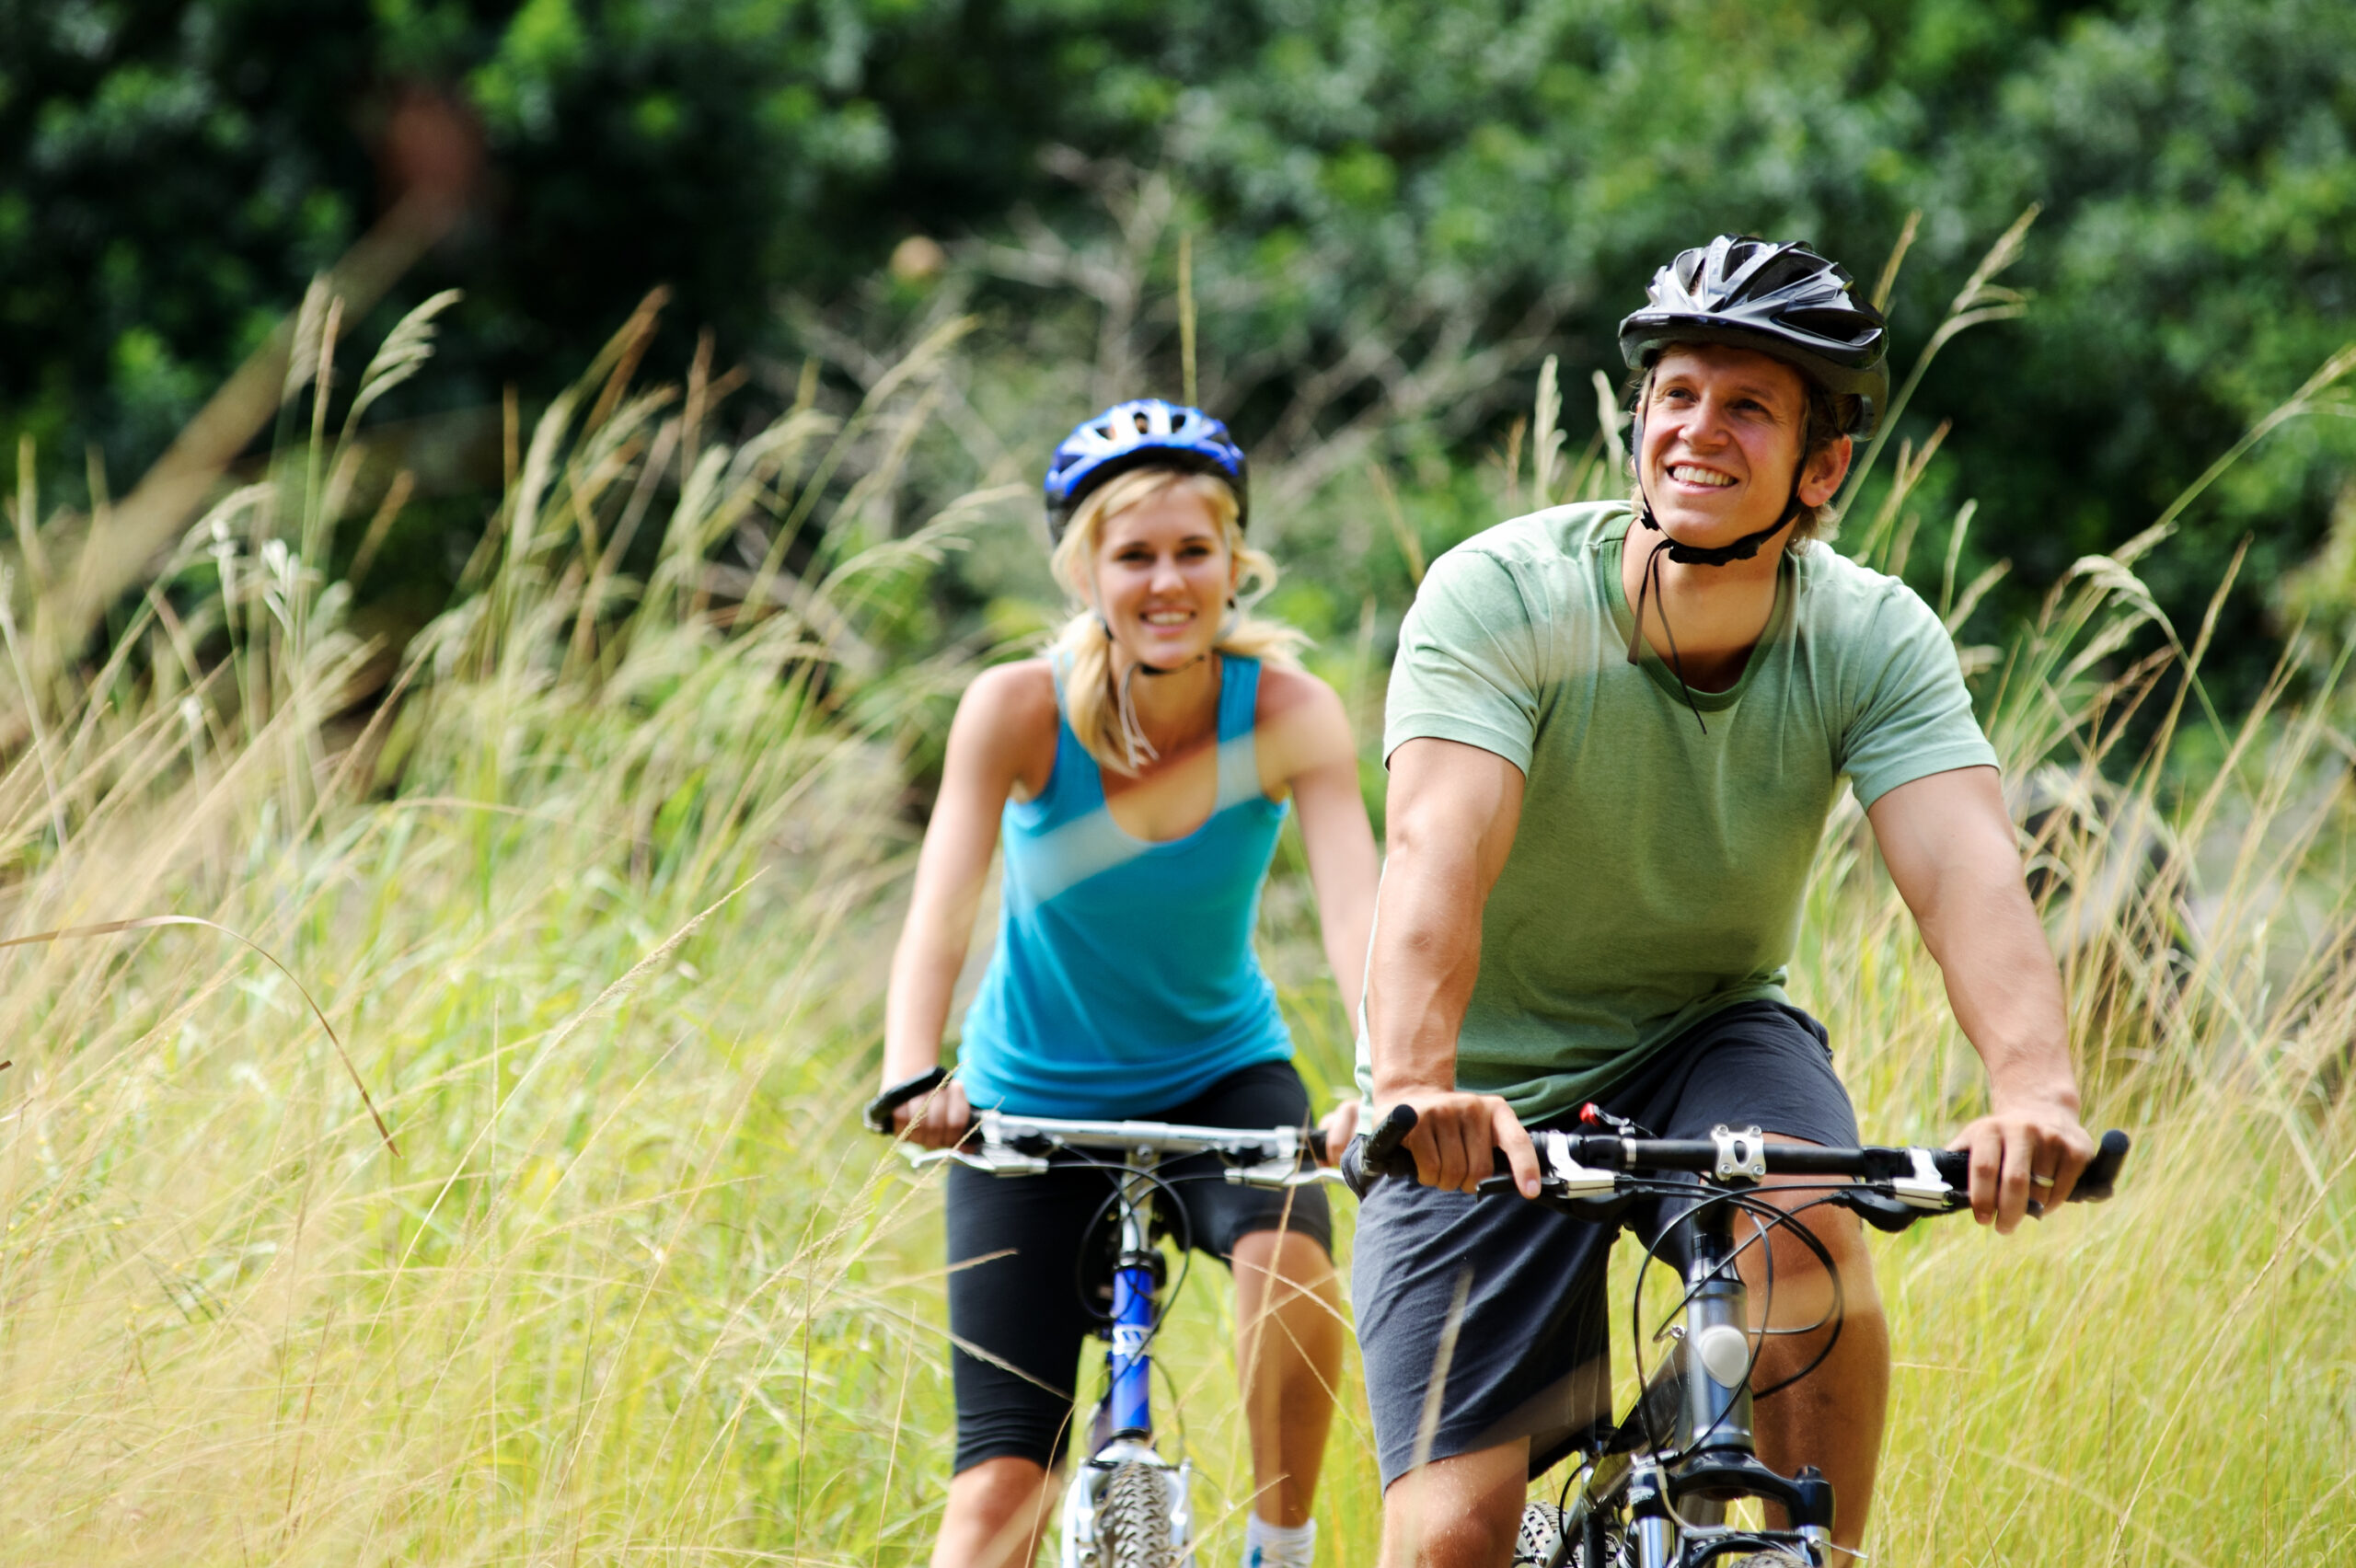 A happy couple rides their bike through a field.